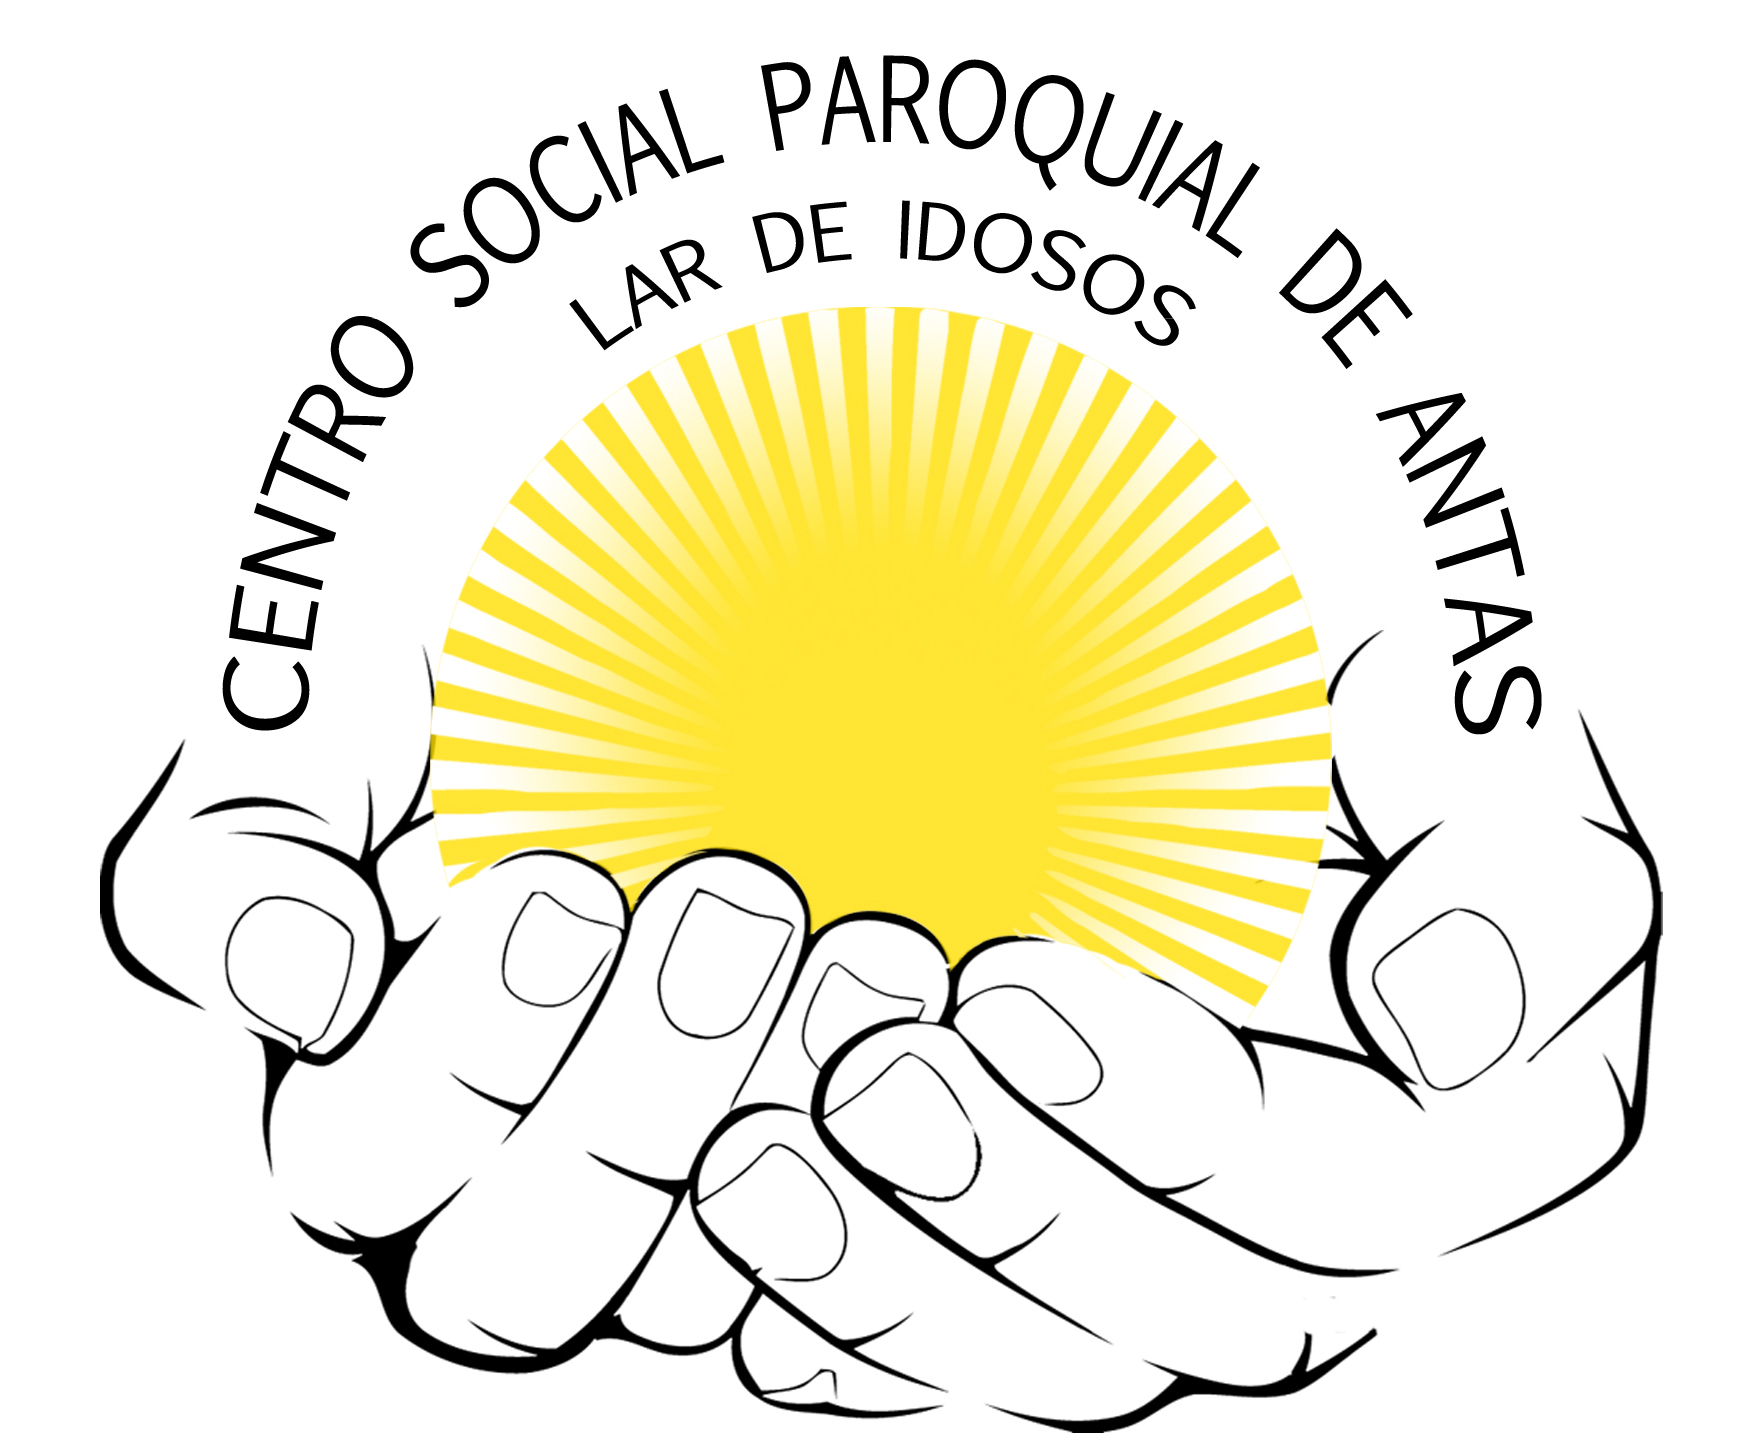 Centro Social Paroquial de Antas